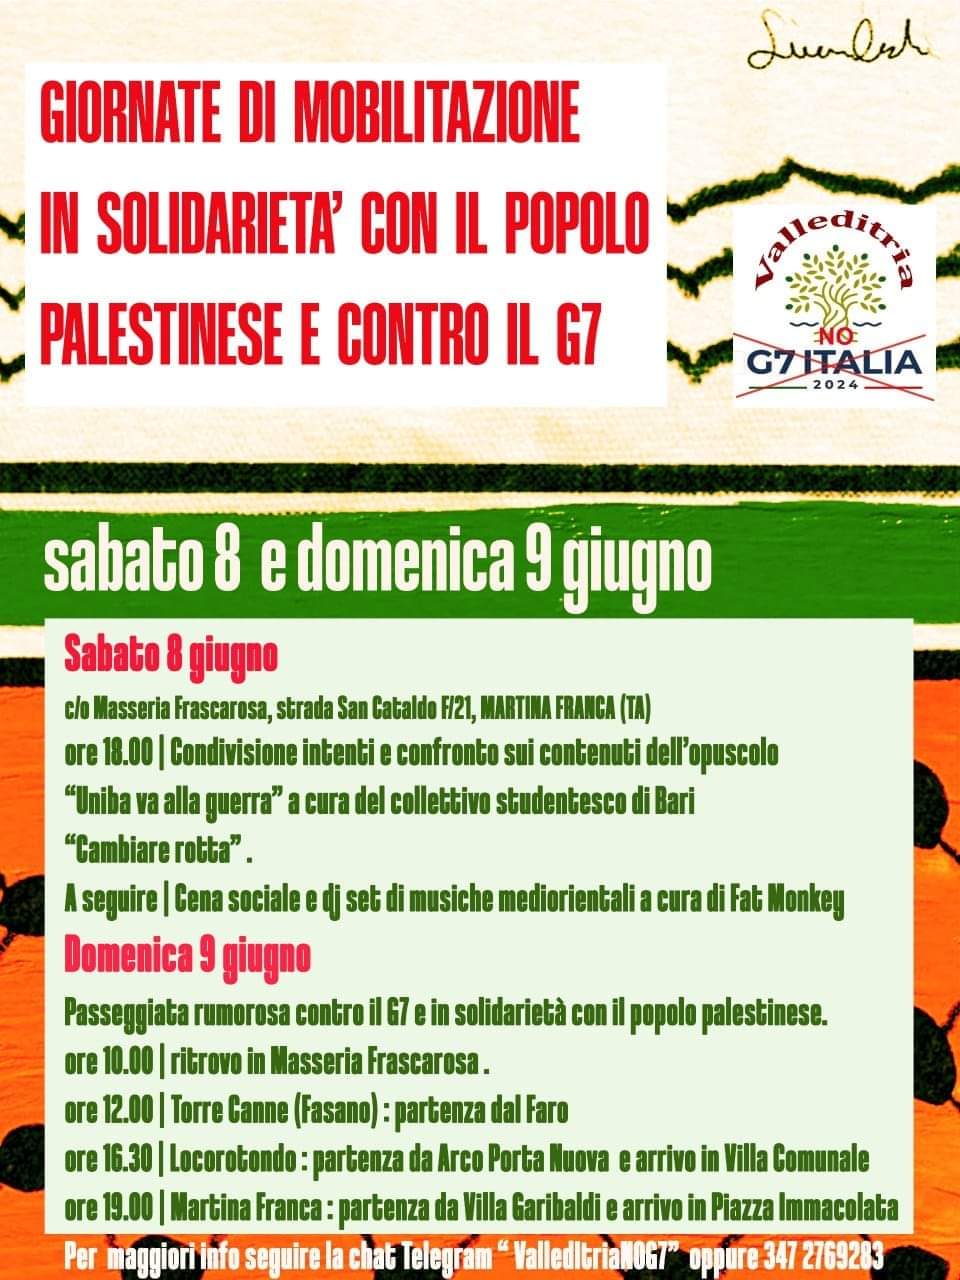 Valle d'Itria: Giornate di mobilitazione in solidarietà con il popolo palestinese e Contro il G7